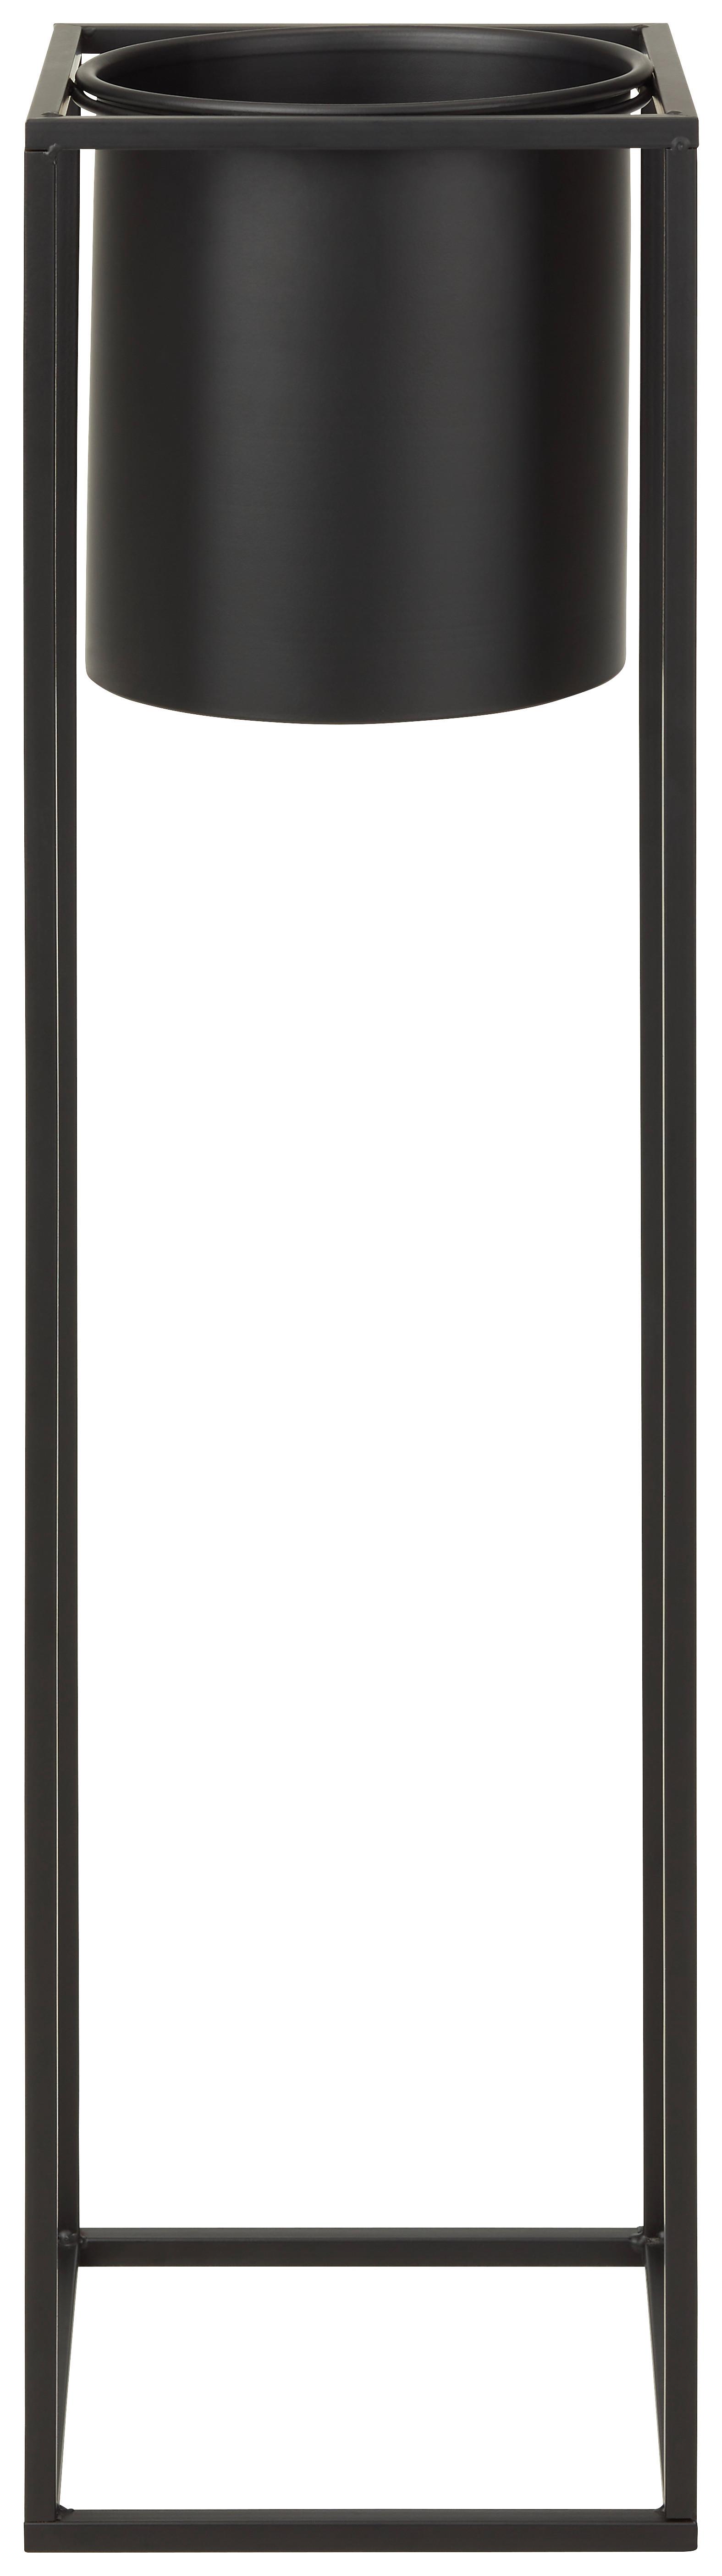 Obal Na Kvetináč Kiara -Akt- -Top- - čierna, Štýlový, kov (21/80,5cm) - Modern Living